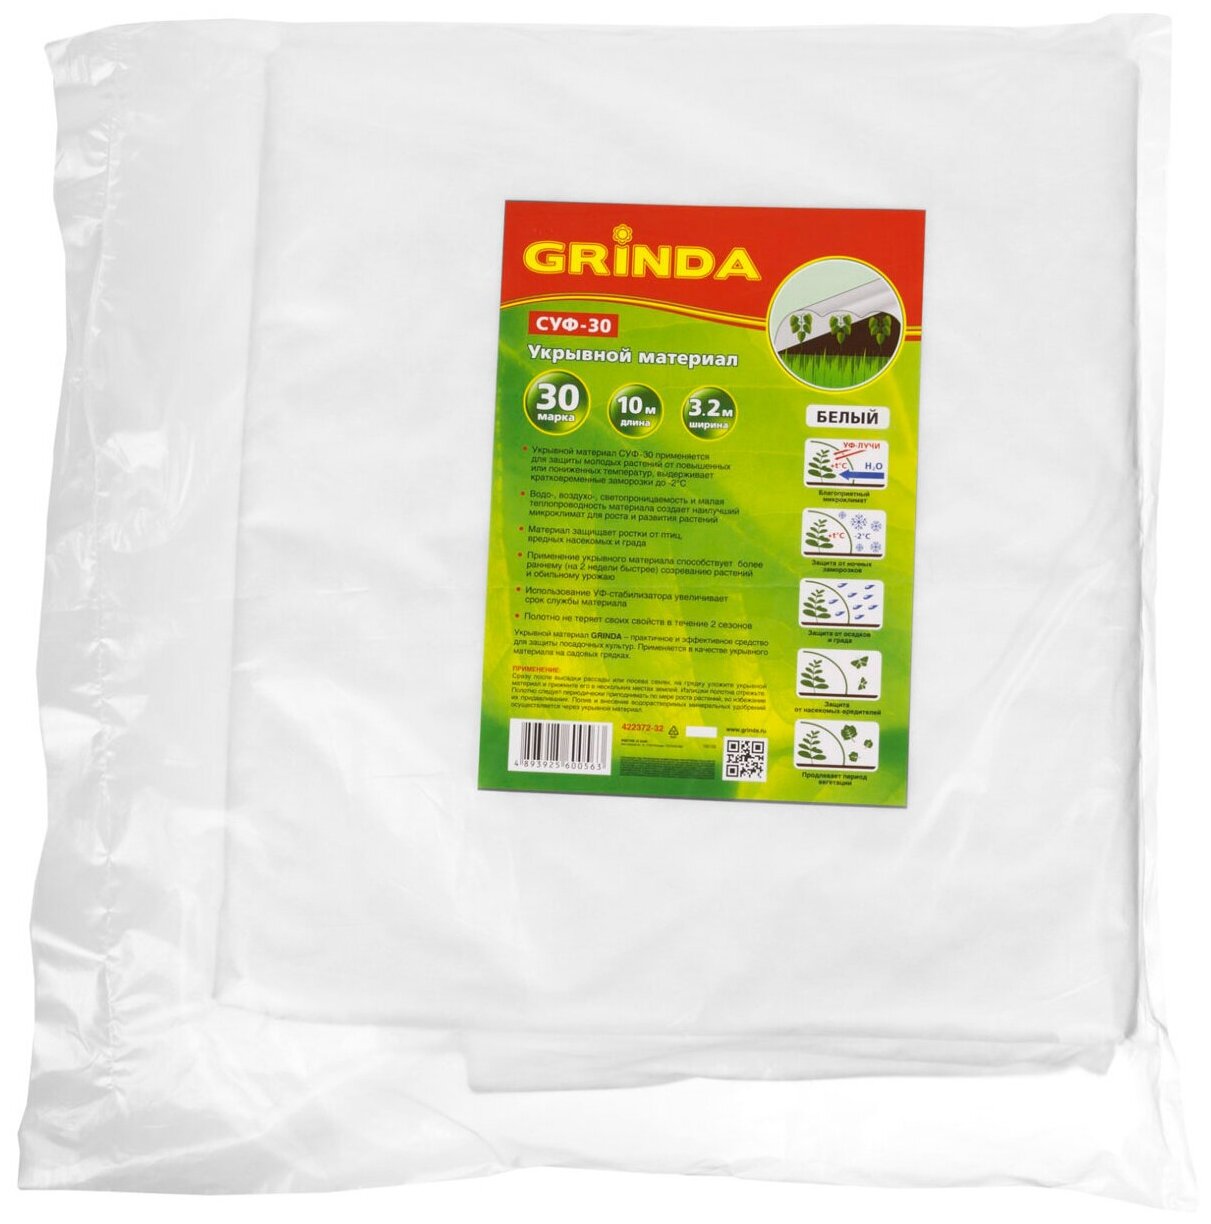 Укрывной материал GRINDA СУФ-30, 3.2x10 м, белый 422372-32